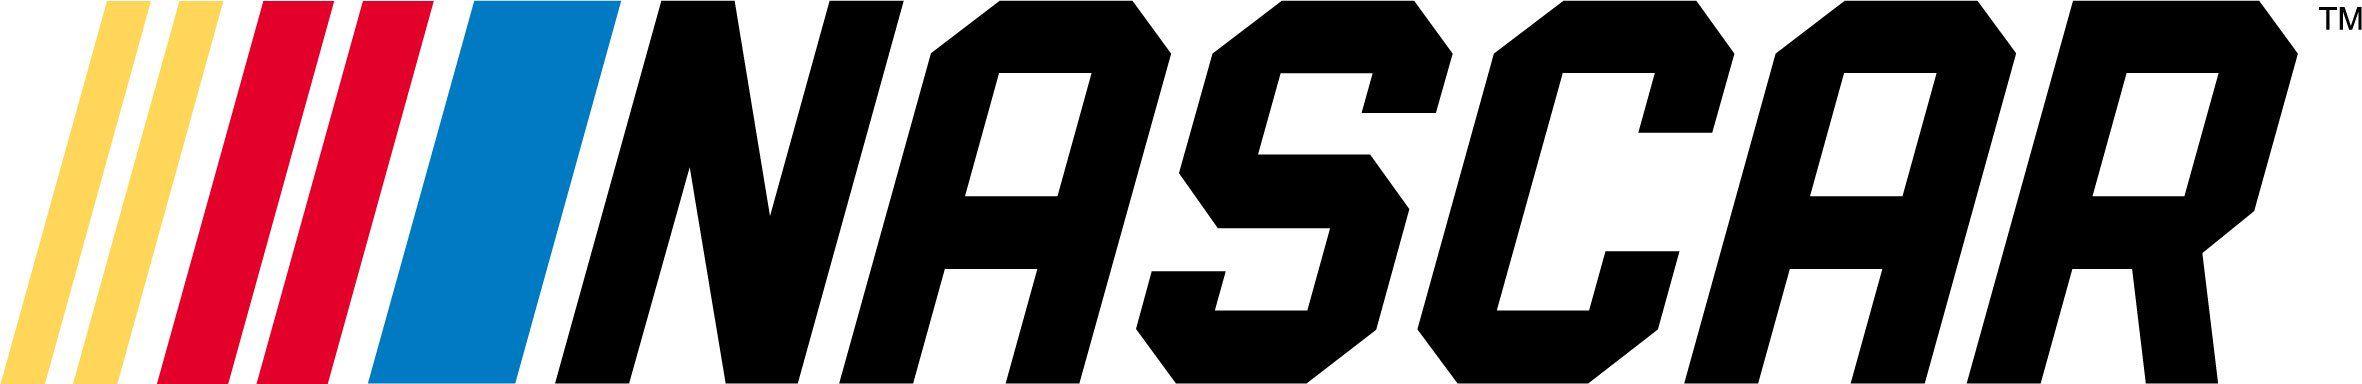 NASCAR Logo - New NASCAR Logo and Monster Energy NASCAR Cup Series Logo